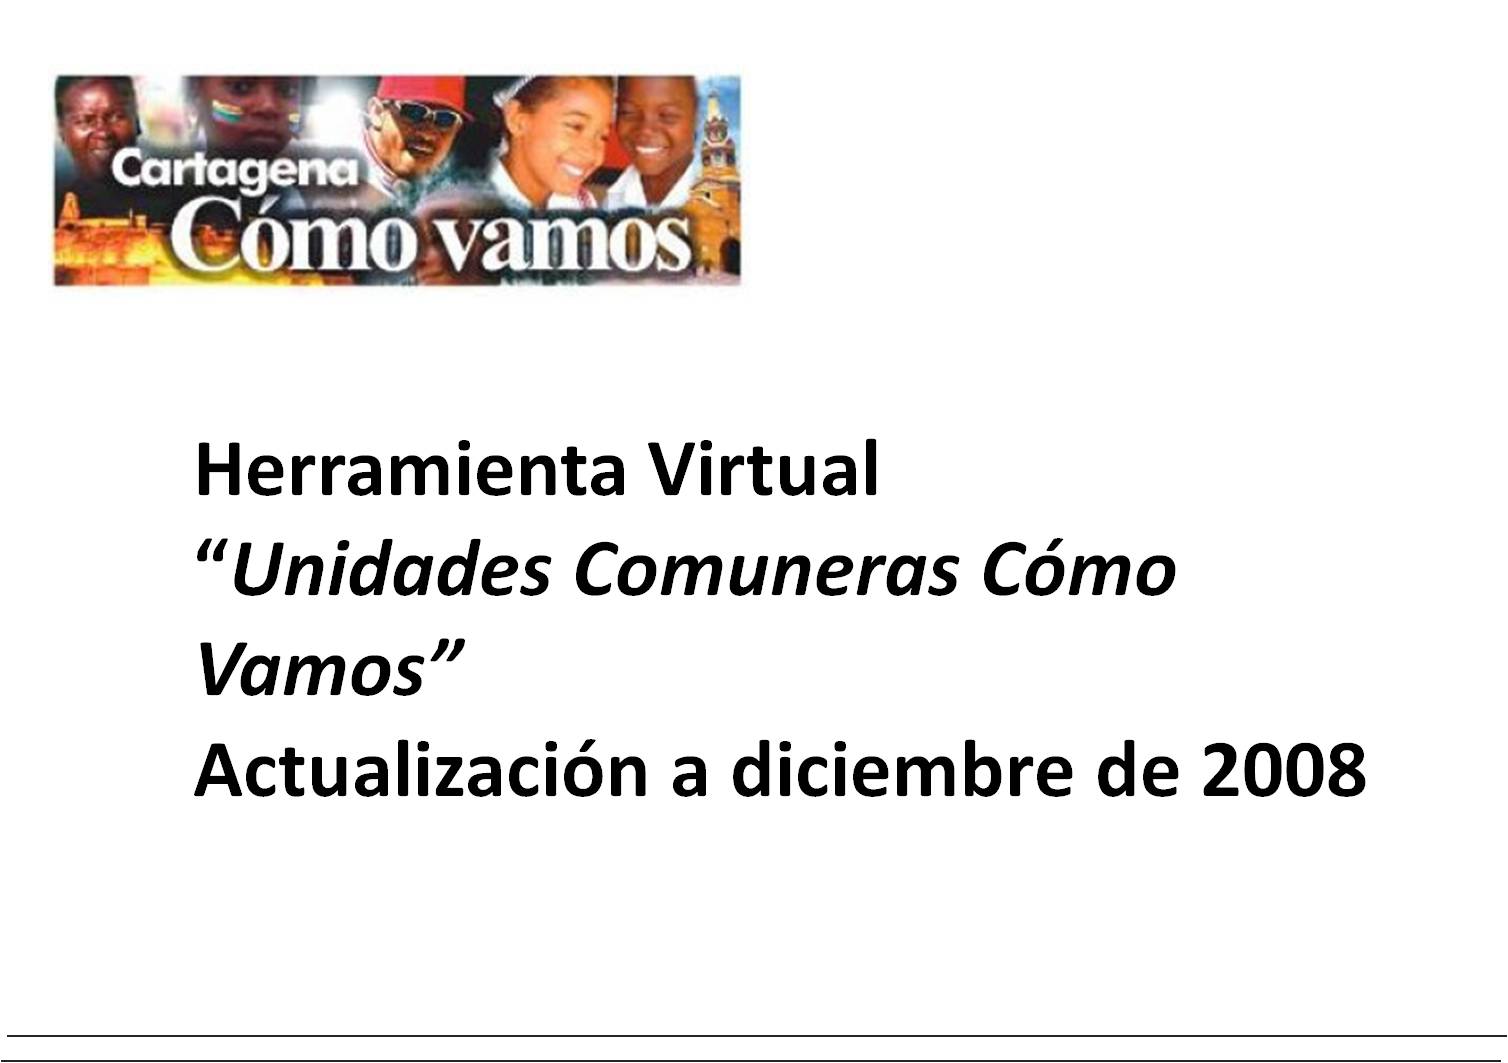 Herramienta Virtual “Unidades Comuneras Cómo Vamos” Actualización a diciembre de 2008